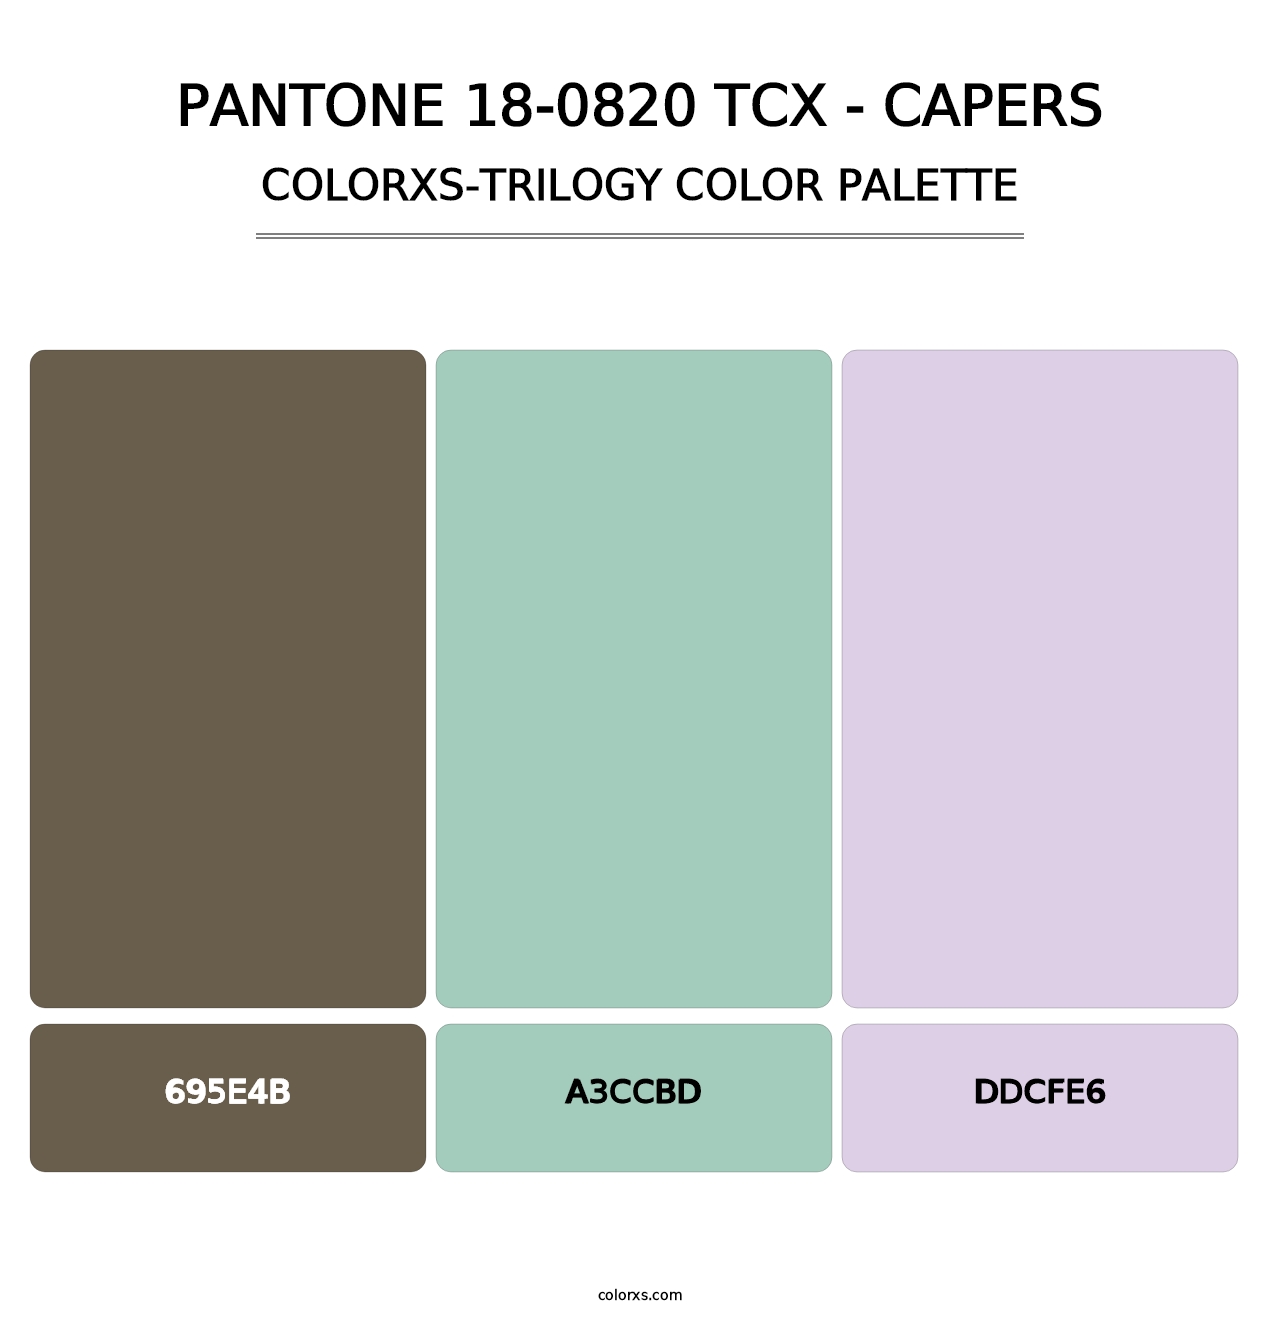 PANTONE 18-0820 TCX - Capers - Colorxs Trilogy Palette